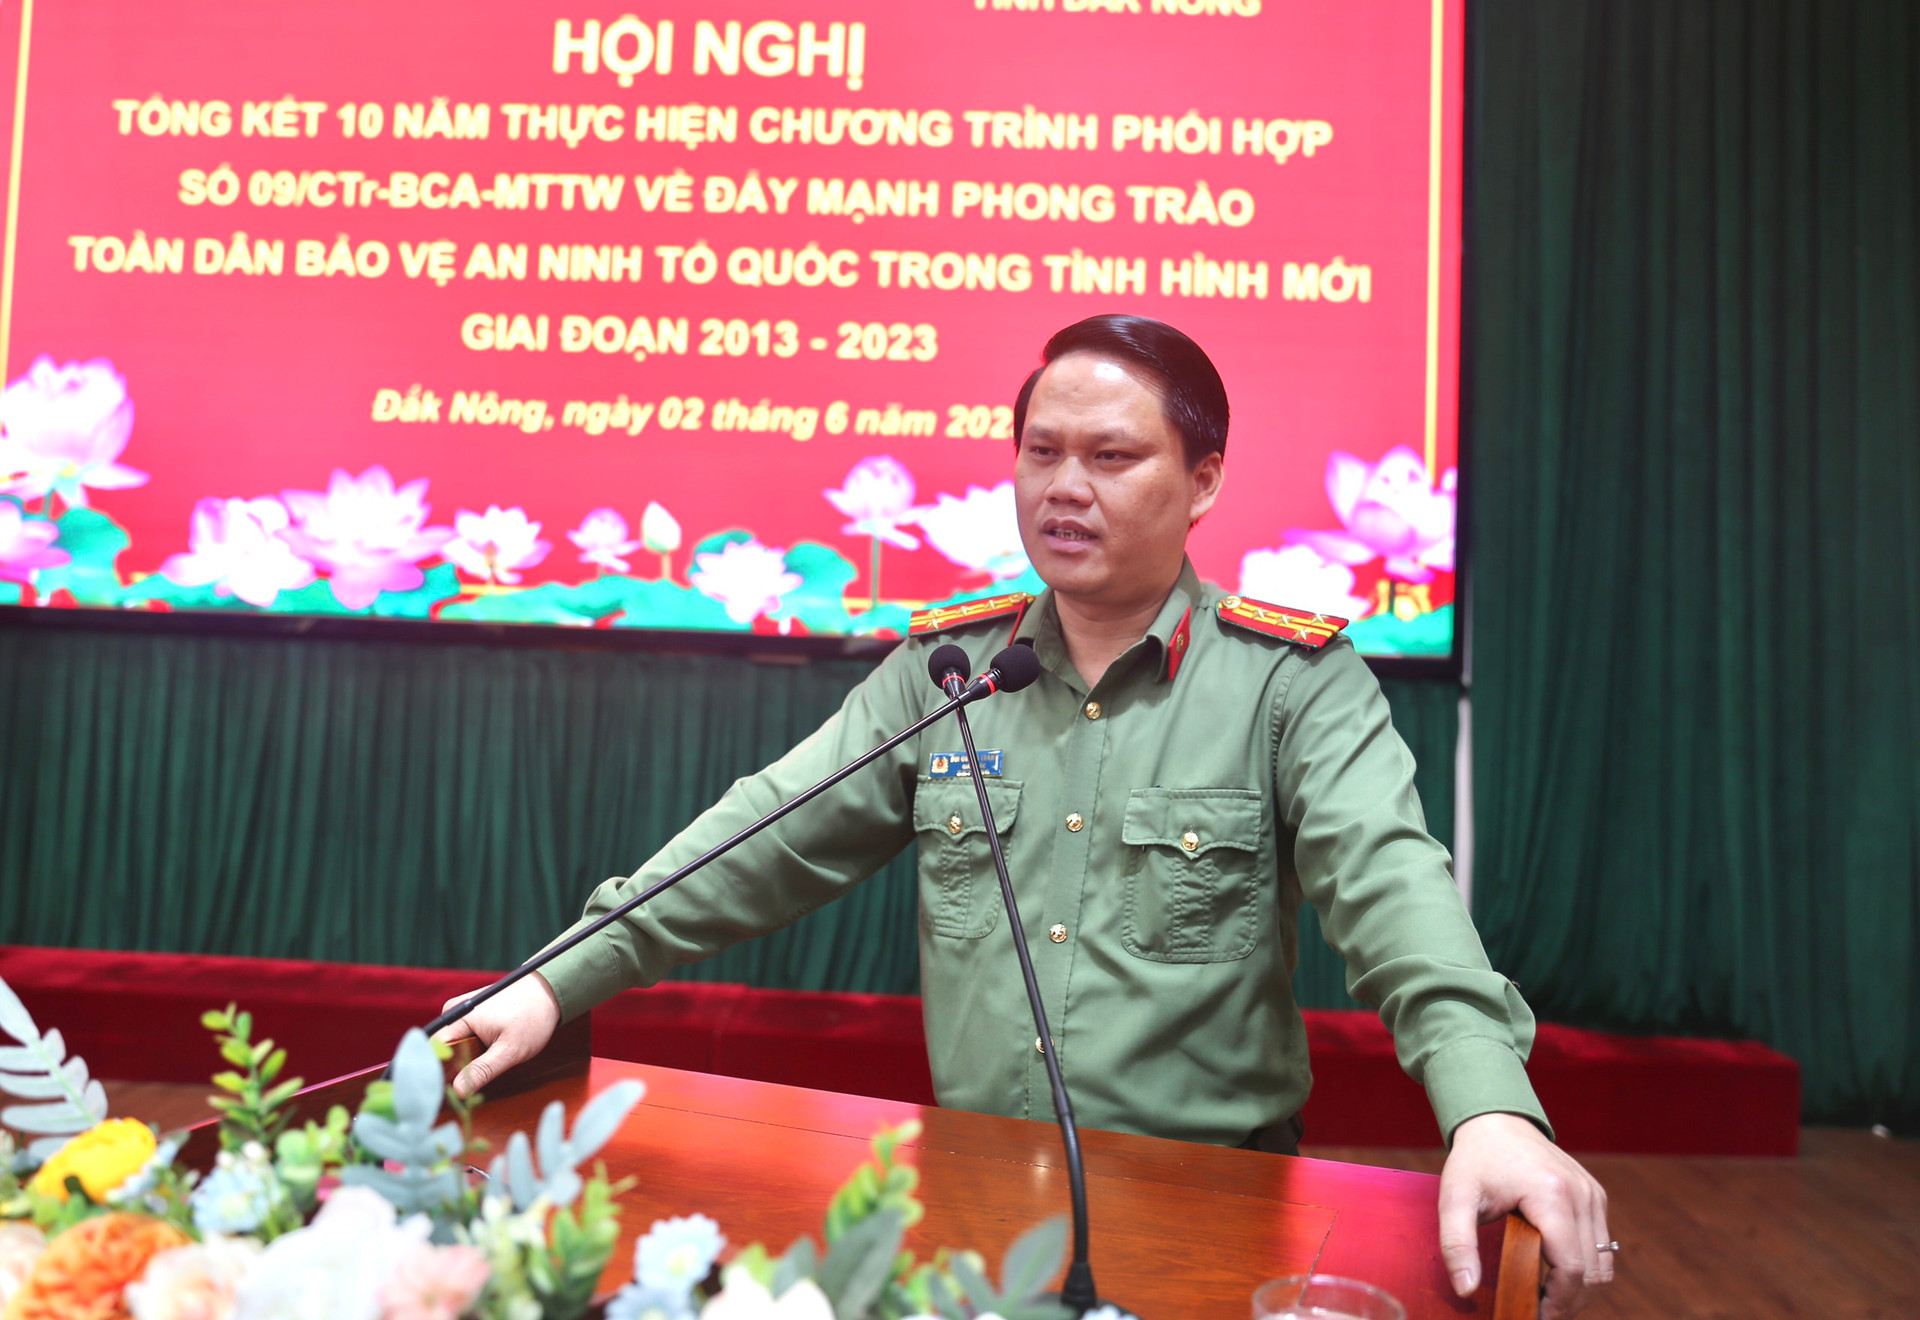 Đại tá Bùi Quang Thanh, Giám đốc Công an tỉnh tiếp thu ý kiến chỉ đạo và triển khai một số nhiệm vụ trọng tâm trong thời gian tới.